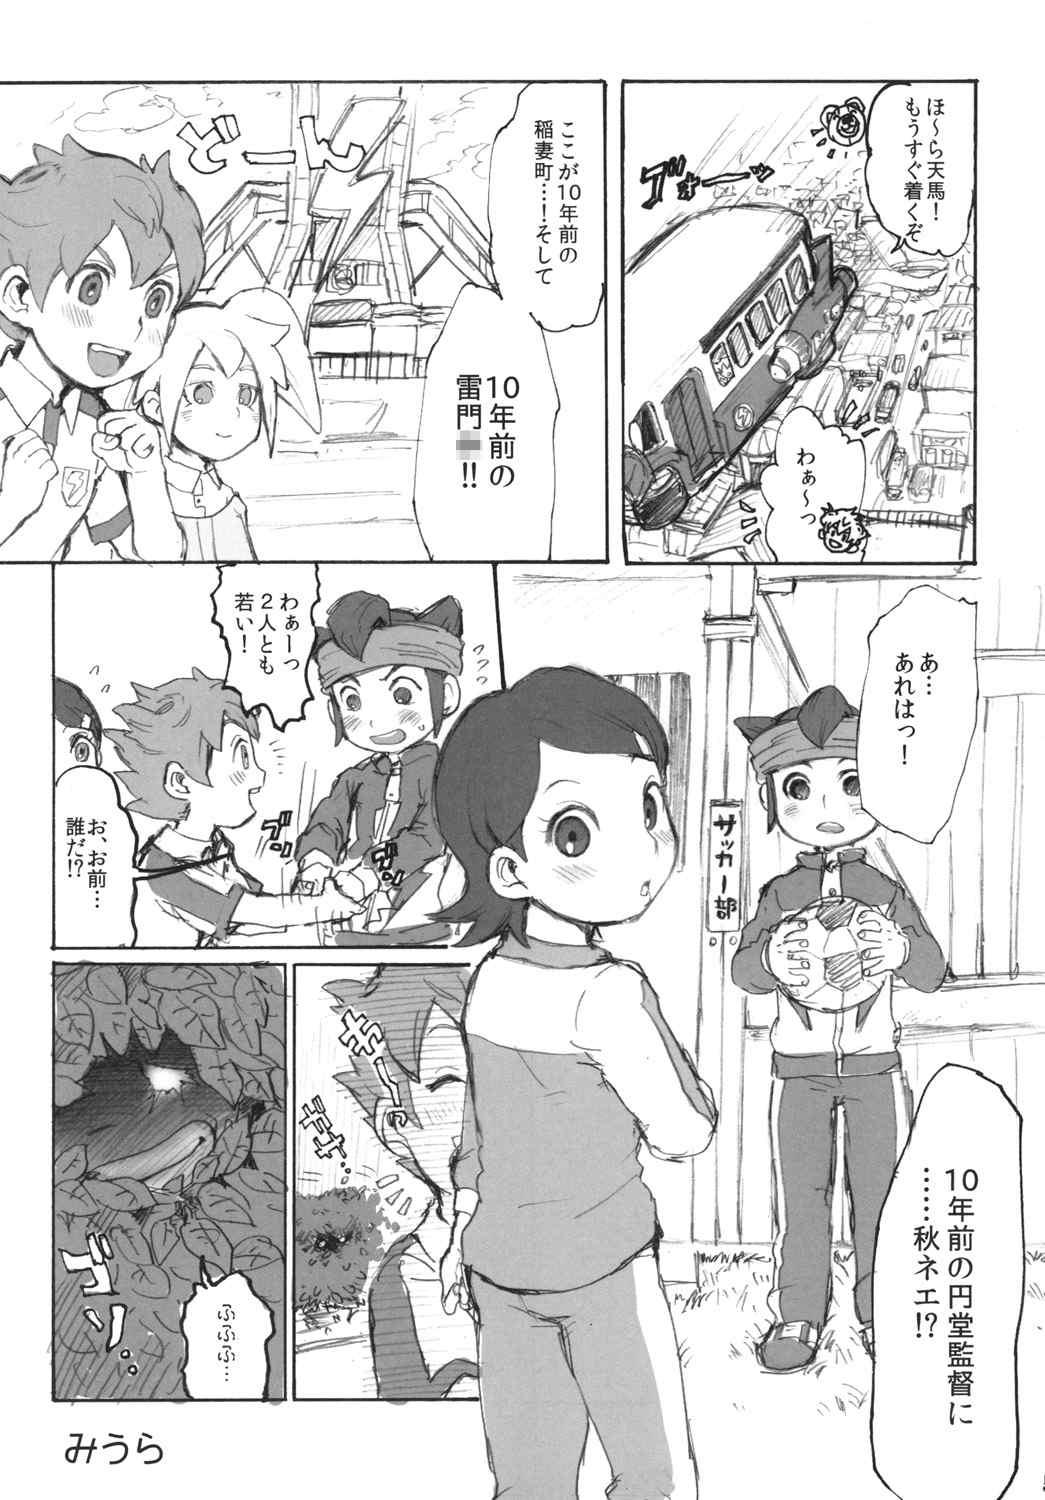 Hermana Ore no Aki wa Mabushii - Inazuma eleven go Group - Page 3